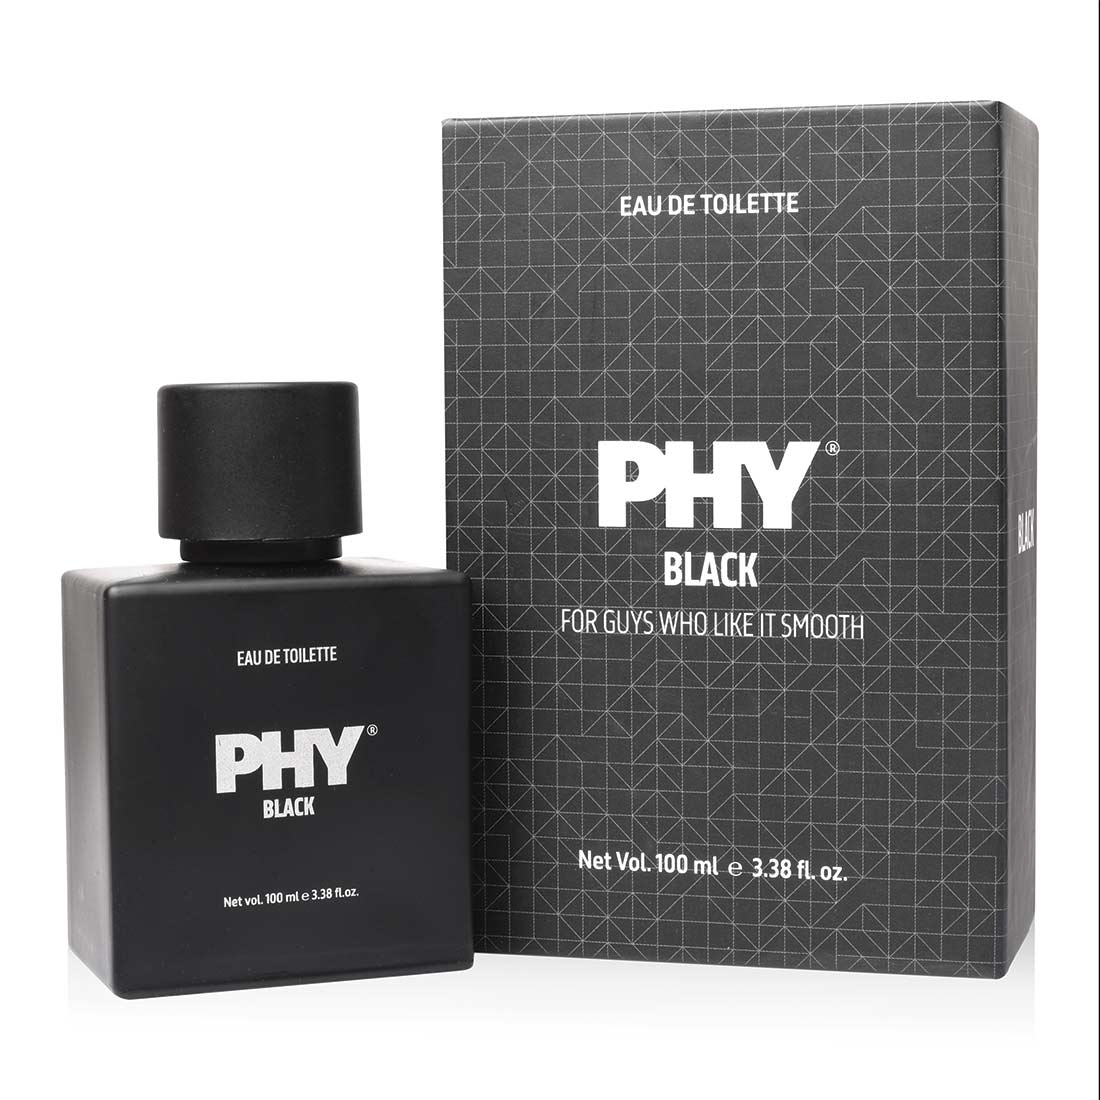 Phy | Phy Eau de toilette -  Black